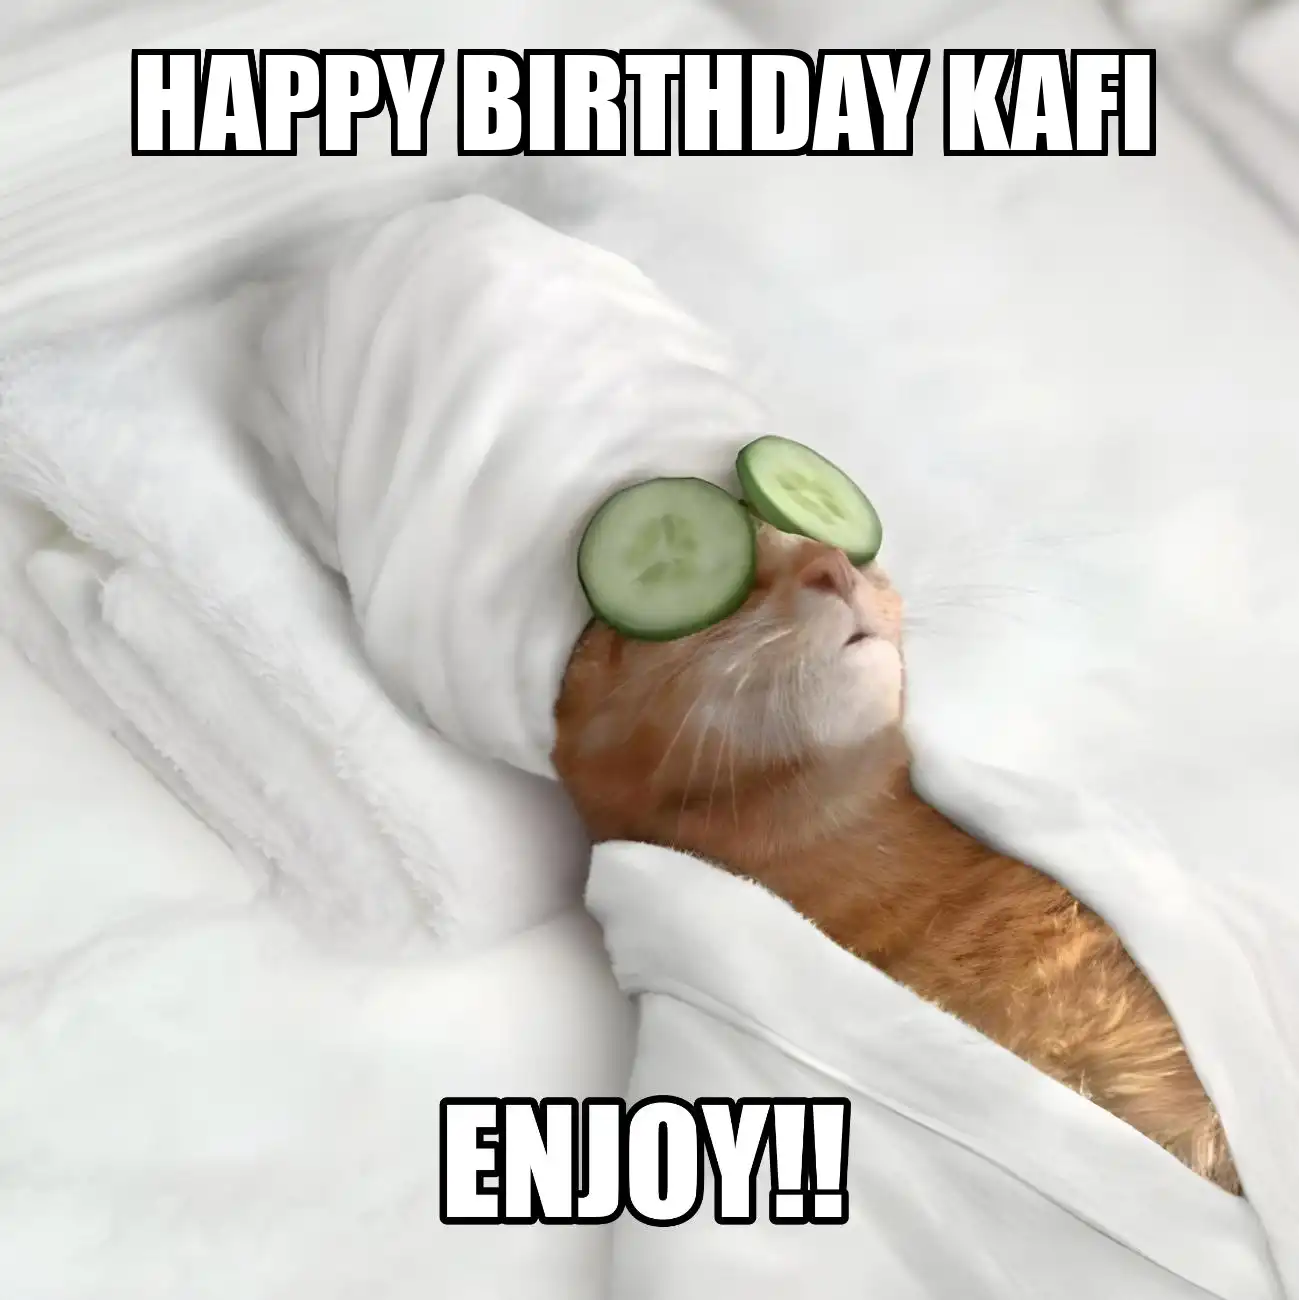 Happy Birthday Kafi Enjoy Cat Meme